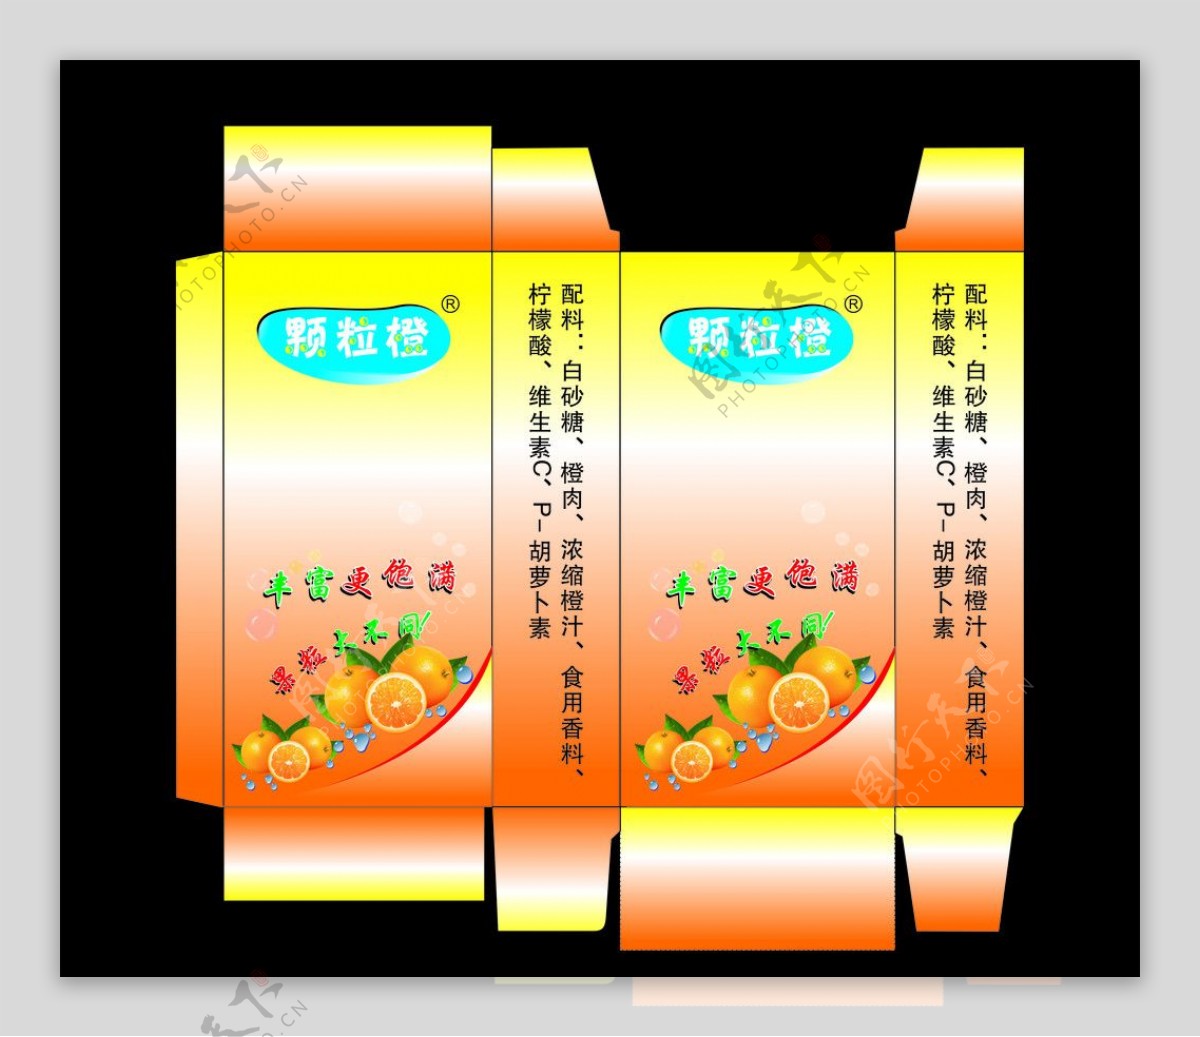 橙汁广告果粒橙图片